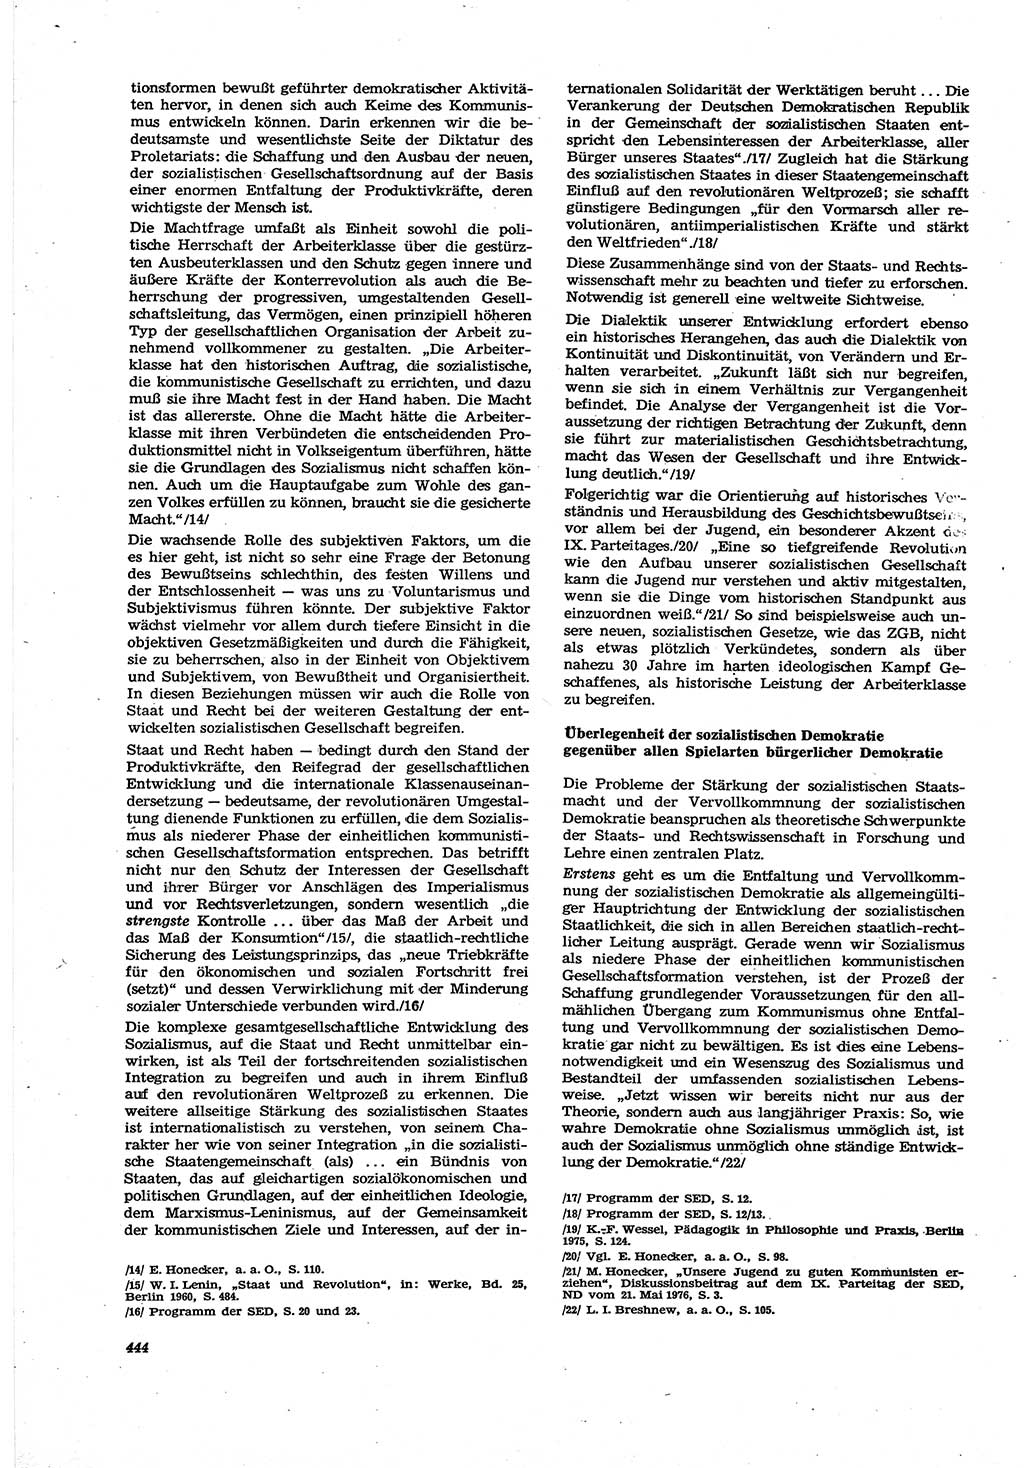 Neue Justiz (NJ), Zeitschrift für Recht und Rechtswissenschaft [Deutsche Demokratische Republik (DDR)], 30. Jahrgang 1976, Seite 444 (NJ DDR 1976, S. 444)